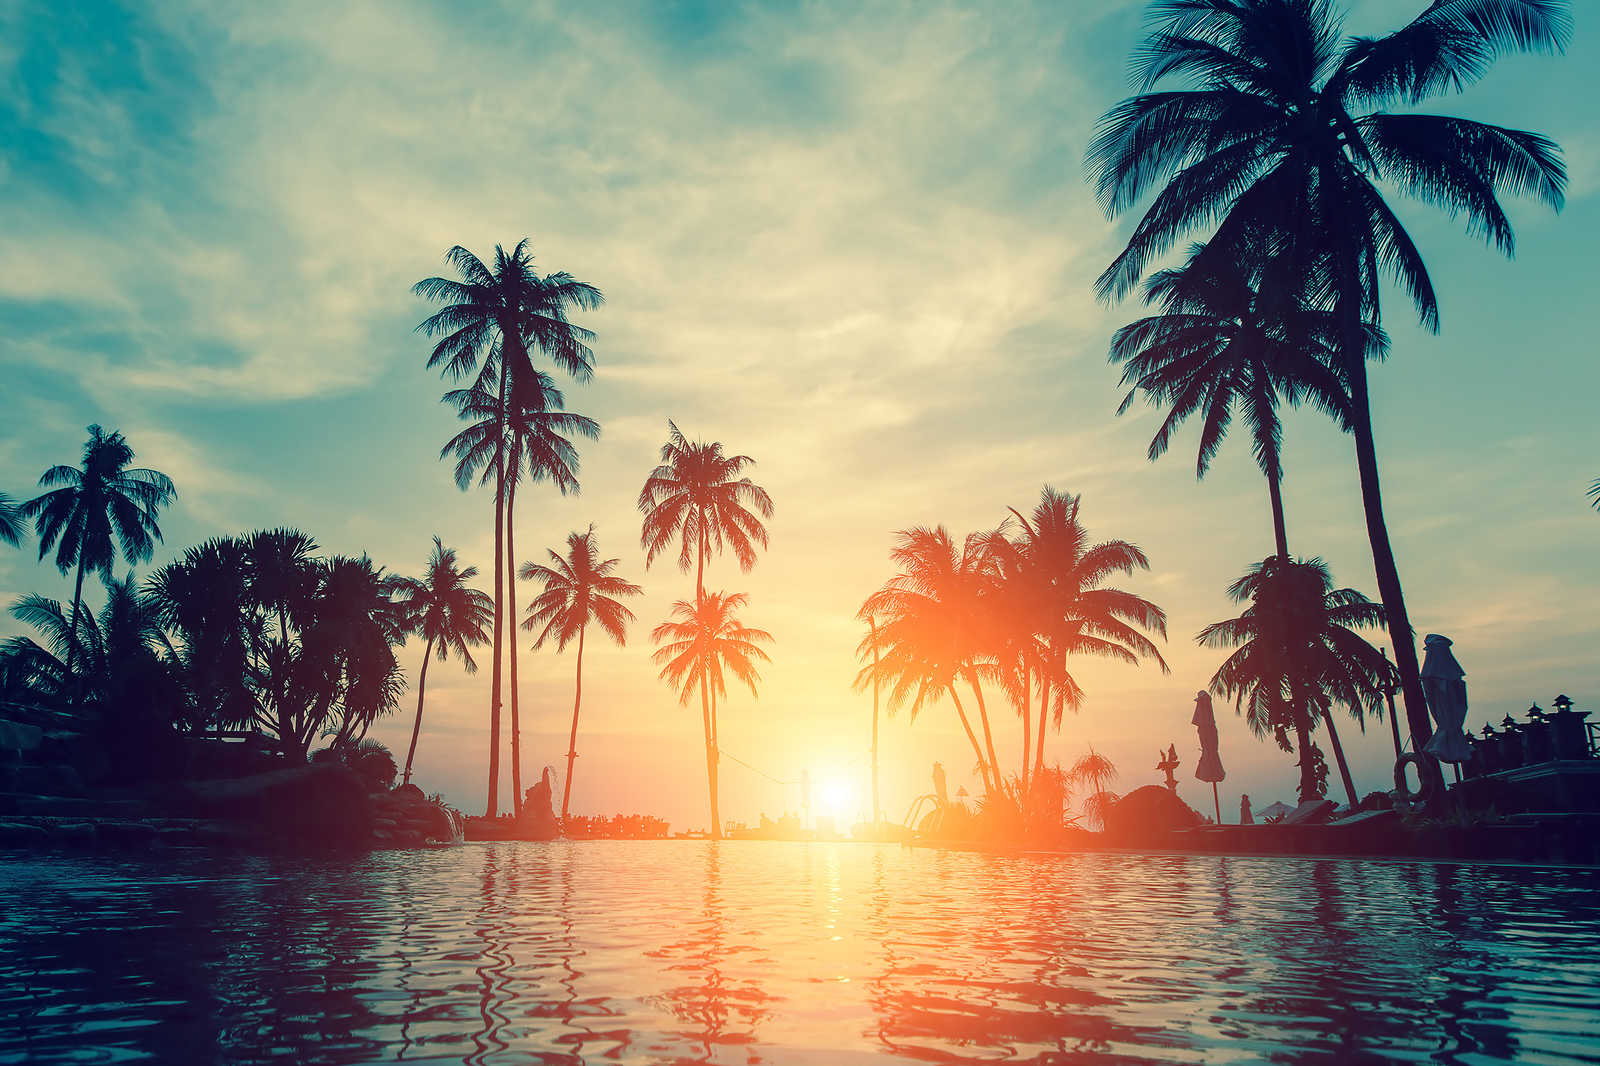             Toile avec palmiers au bord de l'eau au coucher du soleil - 0,90 m x 0,60 m
        